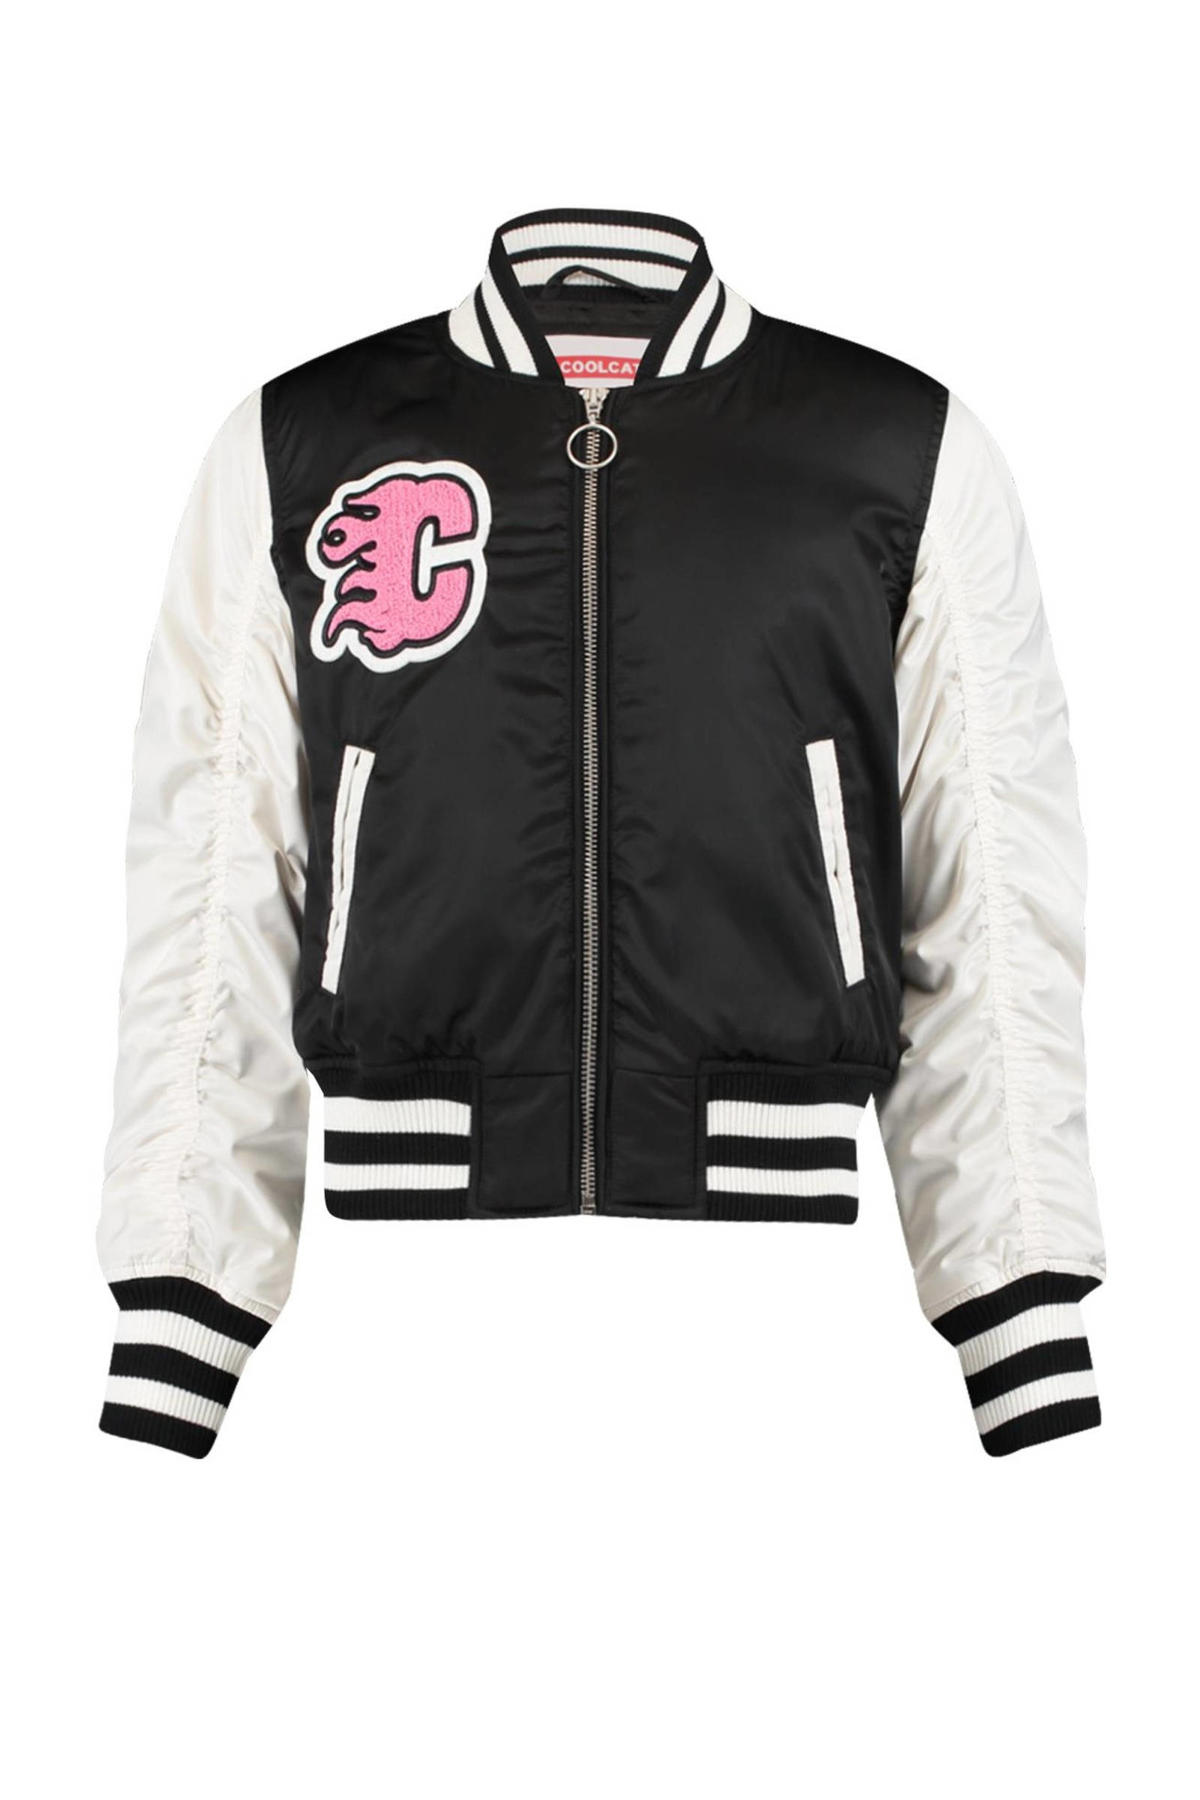 Effectief Supplement broeden CoolCat Junior baseball jacket Jade CG met tekst zwart/wit/roze | wehkamp